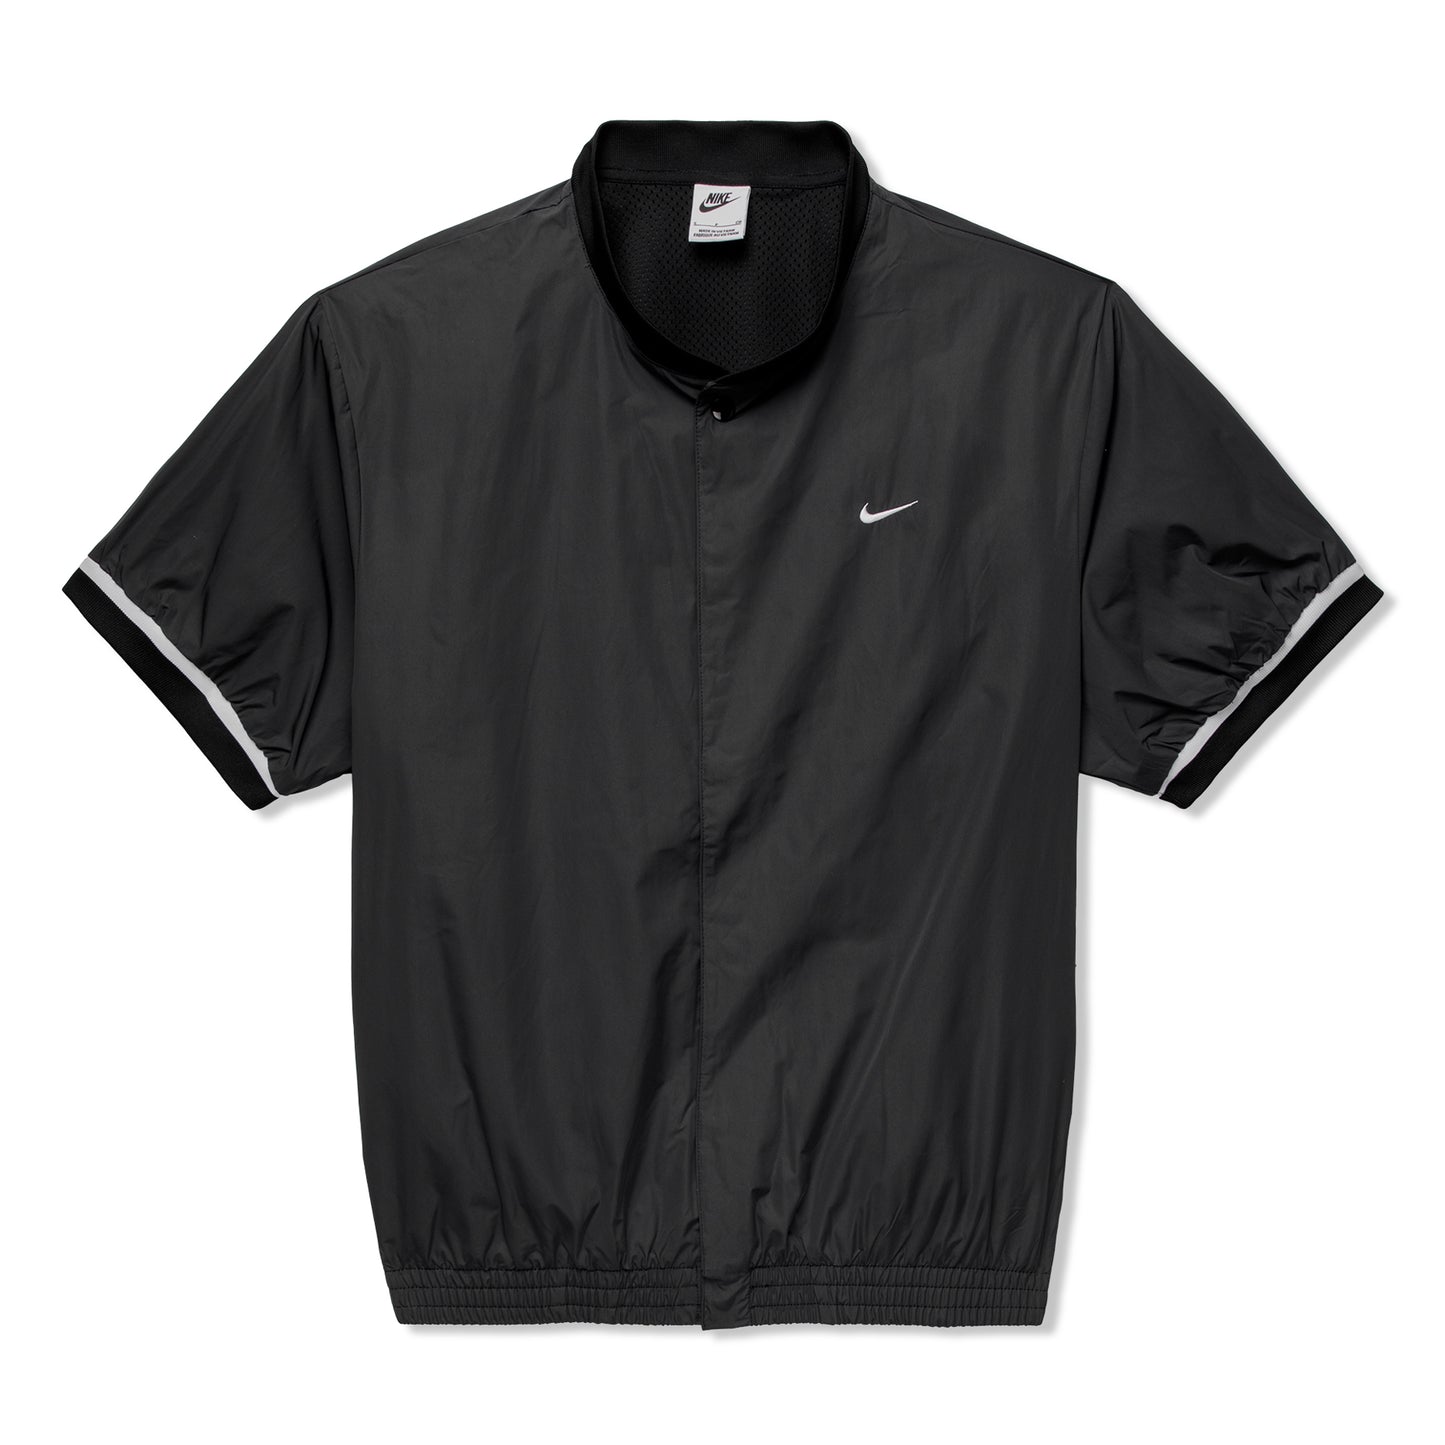 Nike Authentics Warm-Up Shirt (Black/White)